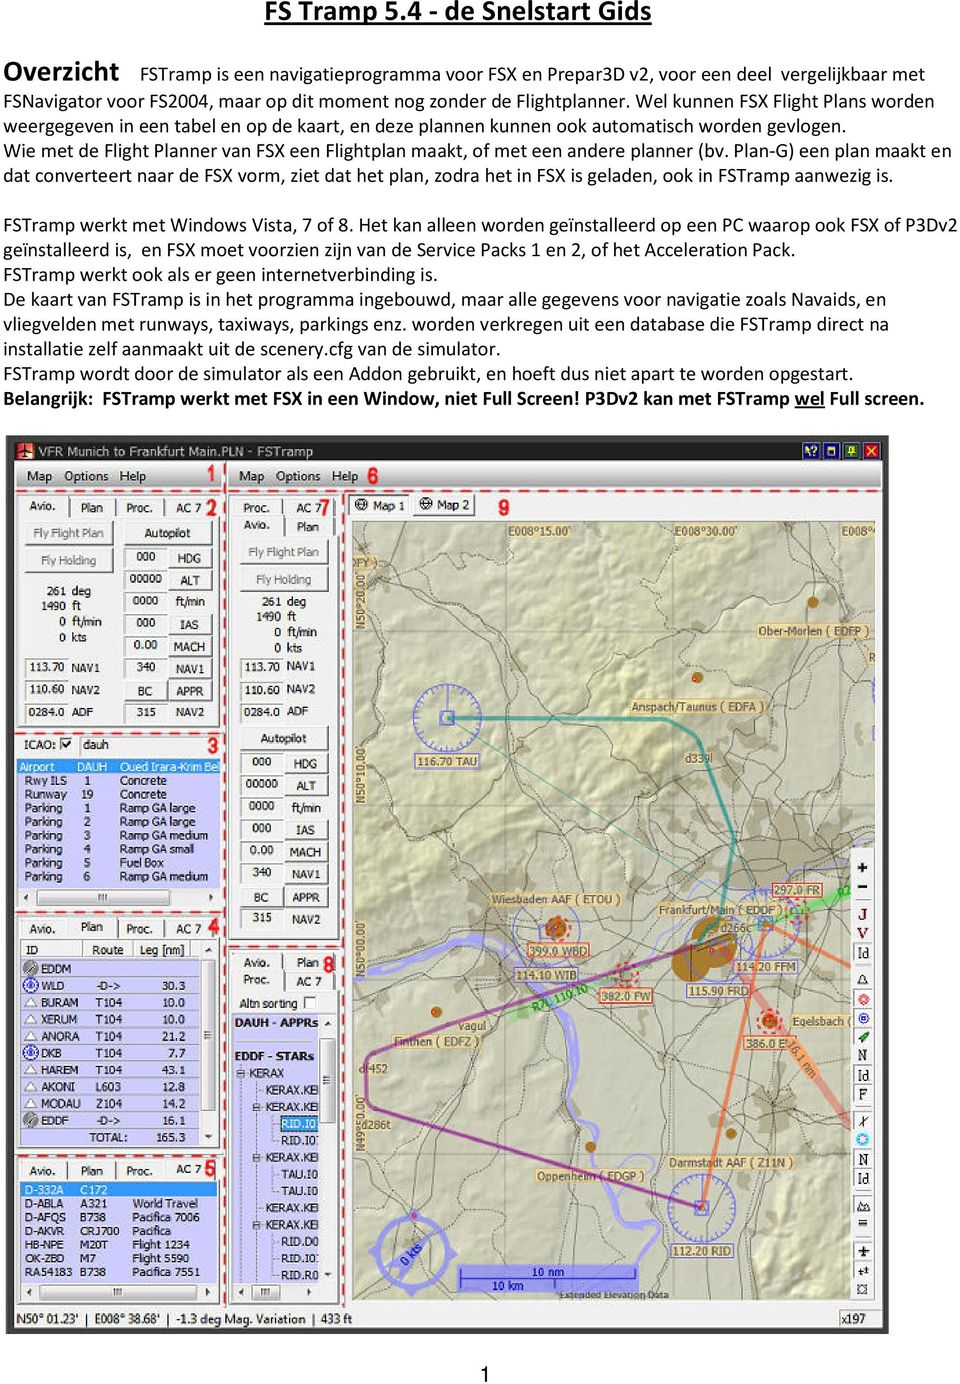 Wel kunnen FSX Flight Plans worden weergegeven in een tabel en op de kaart, en deze plannen kunnen ook automatisch worden gevlogen.